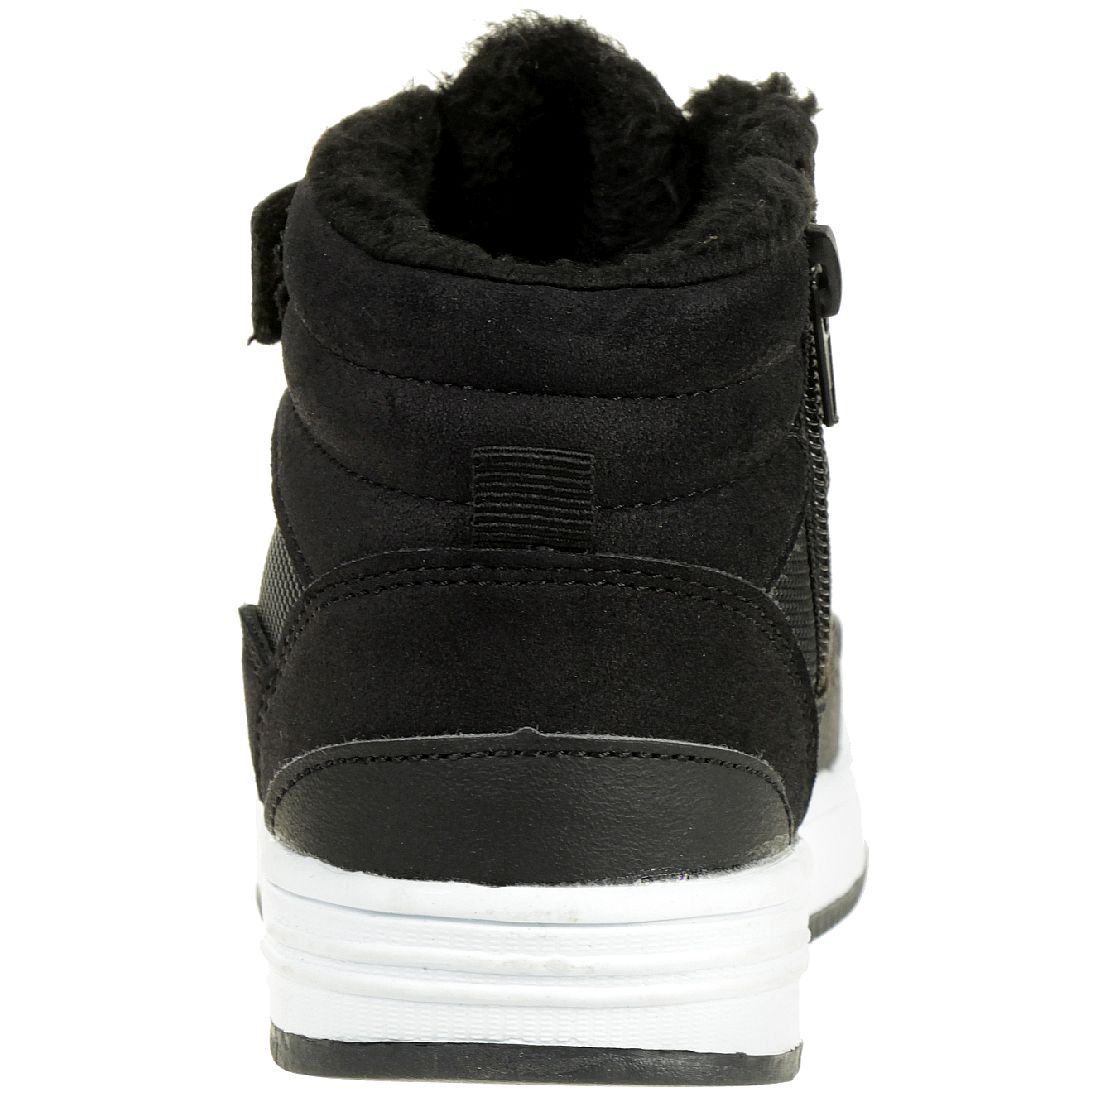 KangaROOS Unisex-Kinder Kerry High-Top Sneaker schwarz gefüttert Winterschuhe